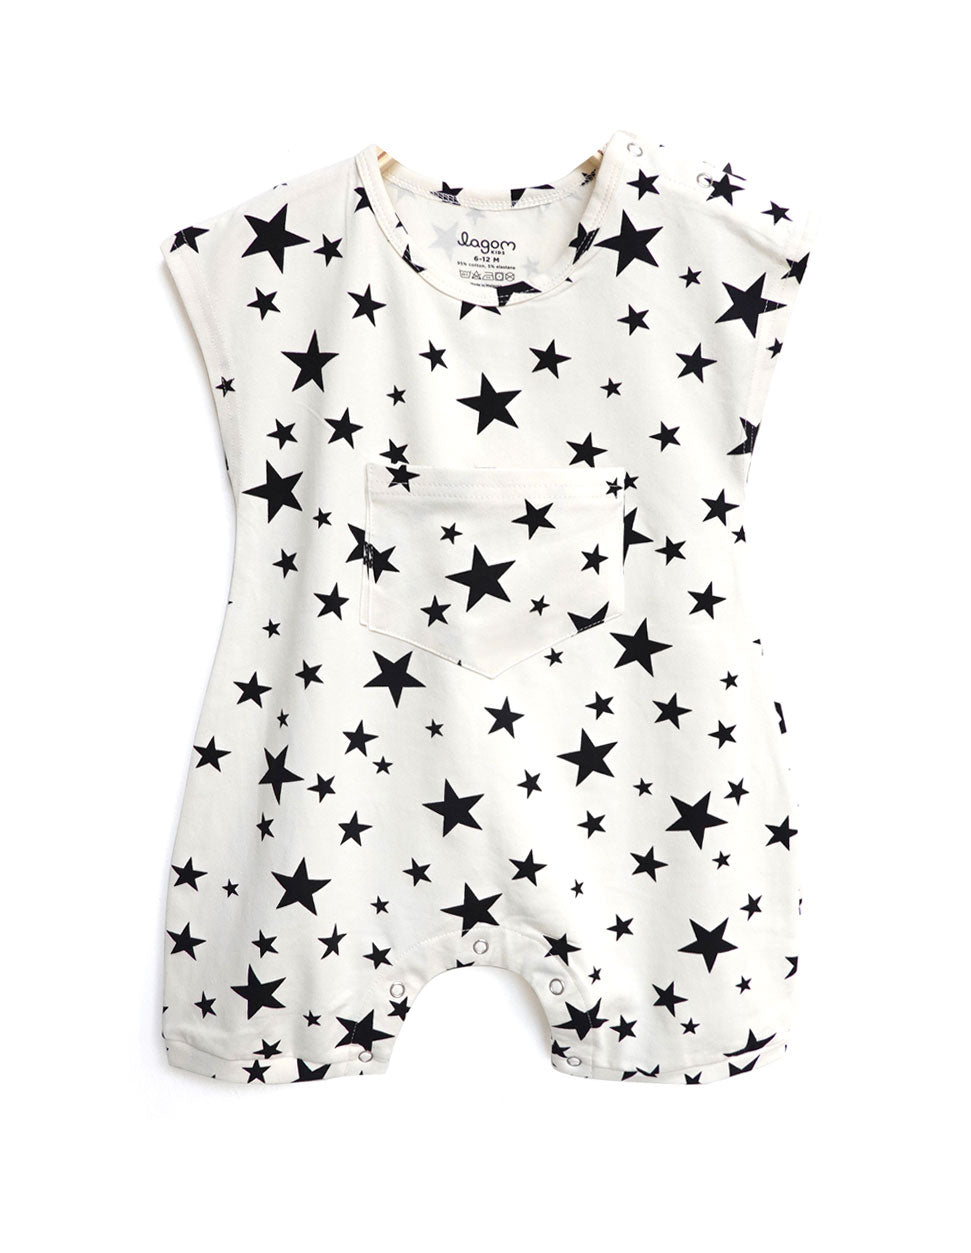 STARS Cap Sleeves Roomy Baby Romper